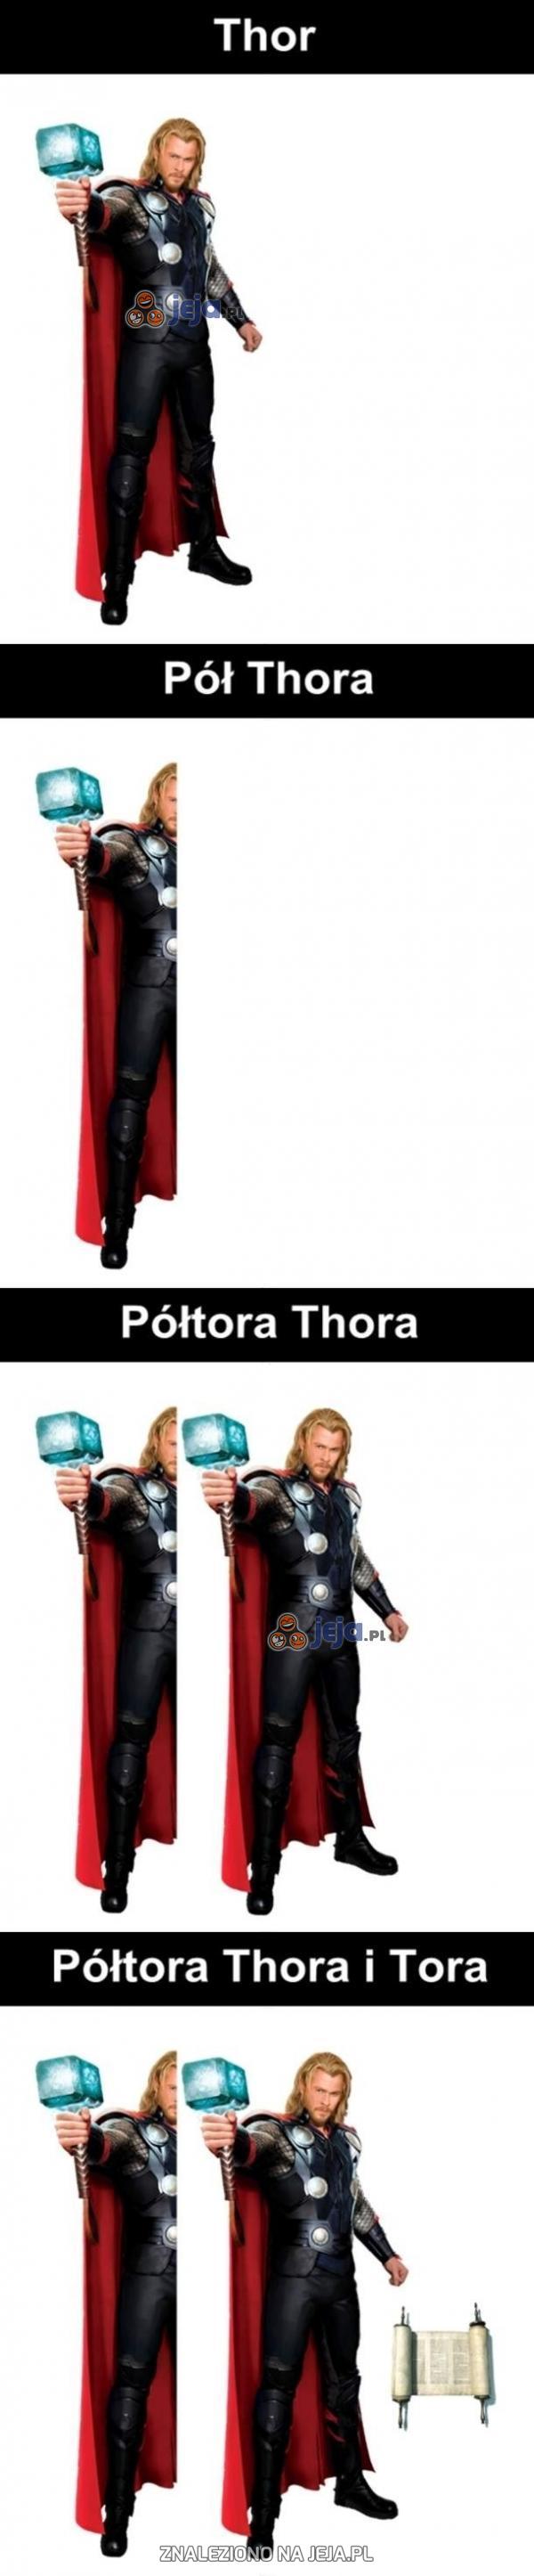 Może trochę Thora?